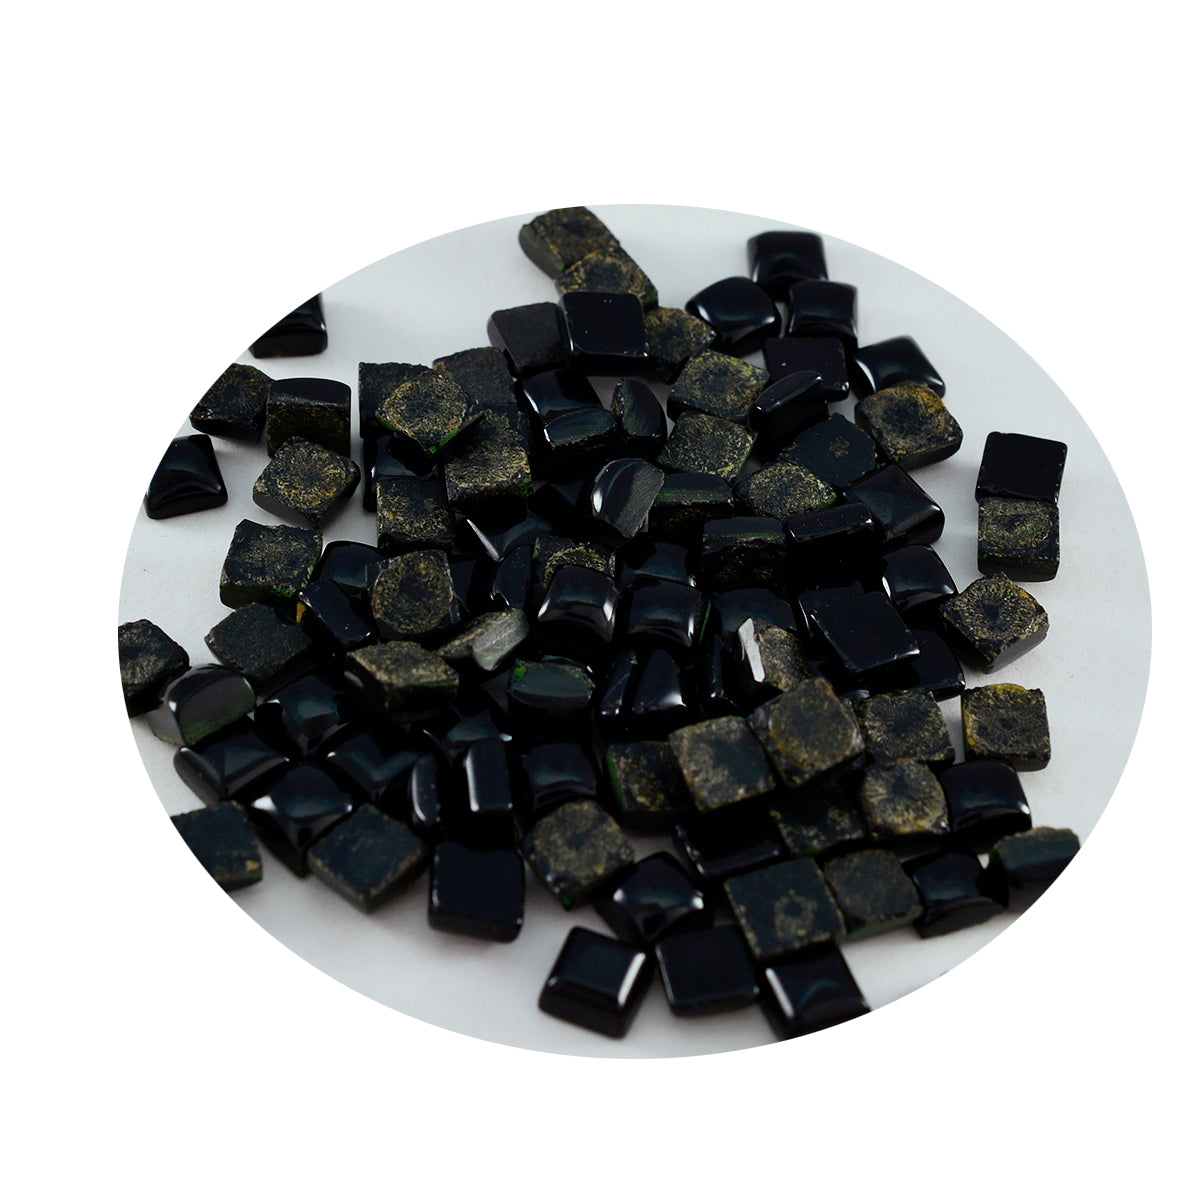 Riyogems 1PC Black Onyx Cabochon 5X5 mm Square Shape astonishing Quality Stone